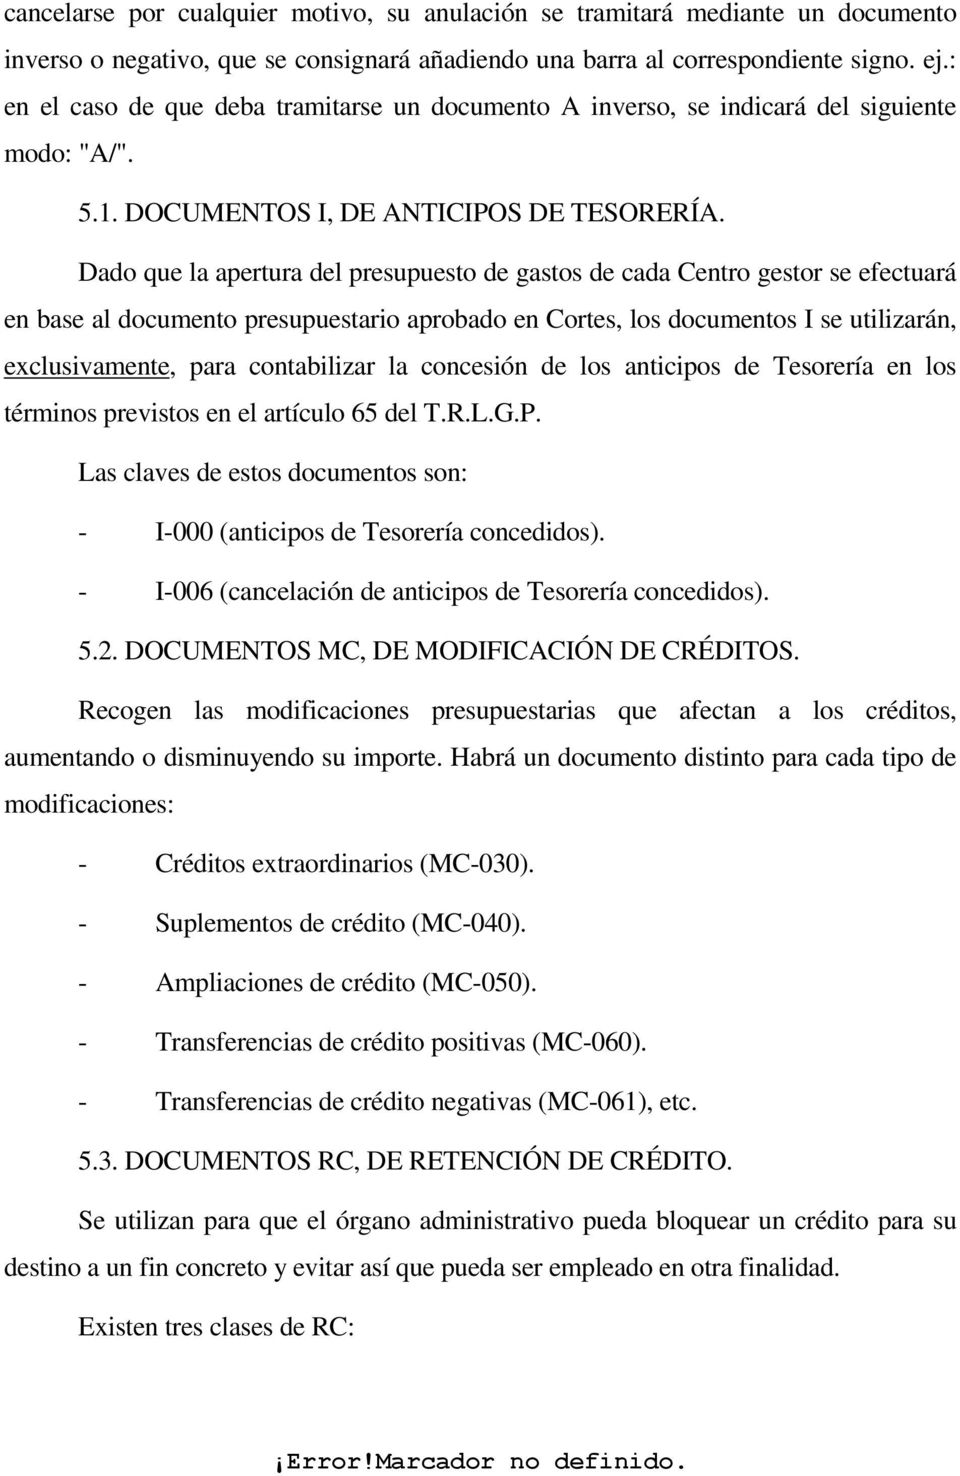 Dado que la apertura del presupuesto de gastos de cada Centro gestor se efectuará en base al documento presupuestario aprobado en Cortes, los documentos I se utilizarán, exclusivamente, para